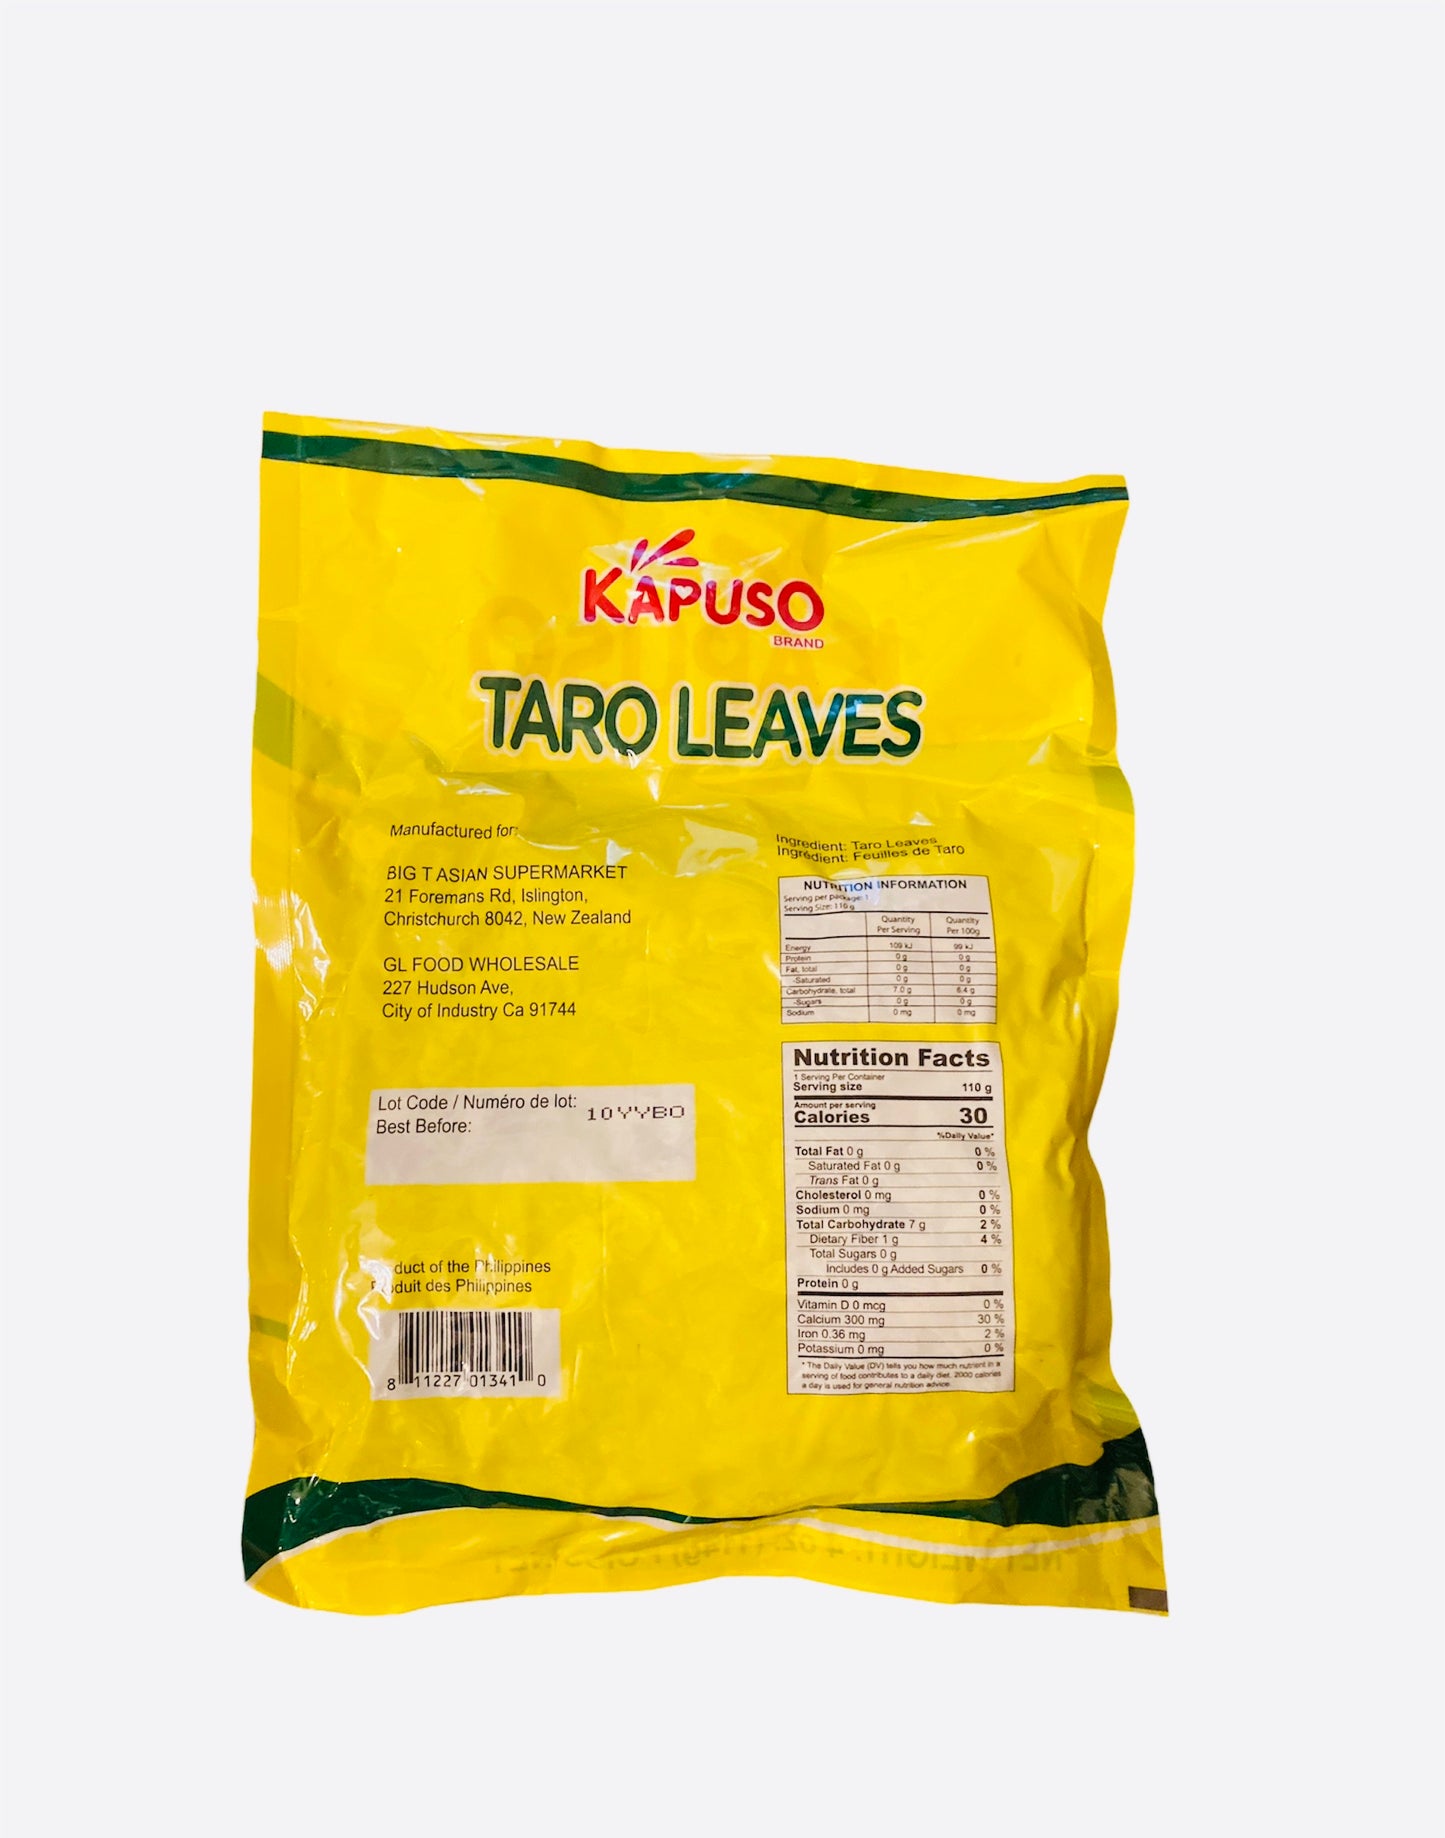 KAPUSO Dried Taro Leaves 114g